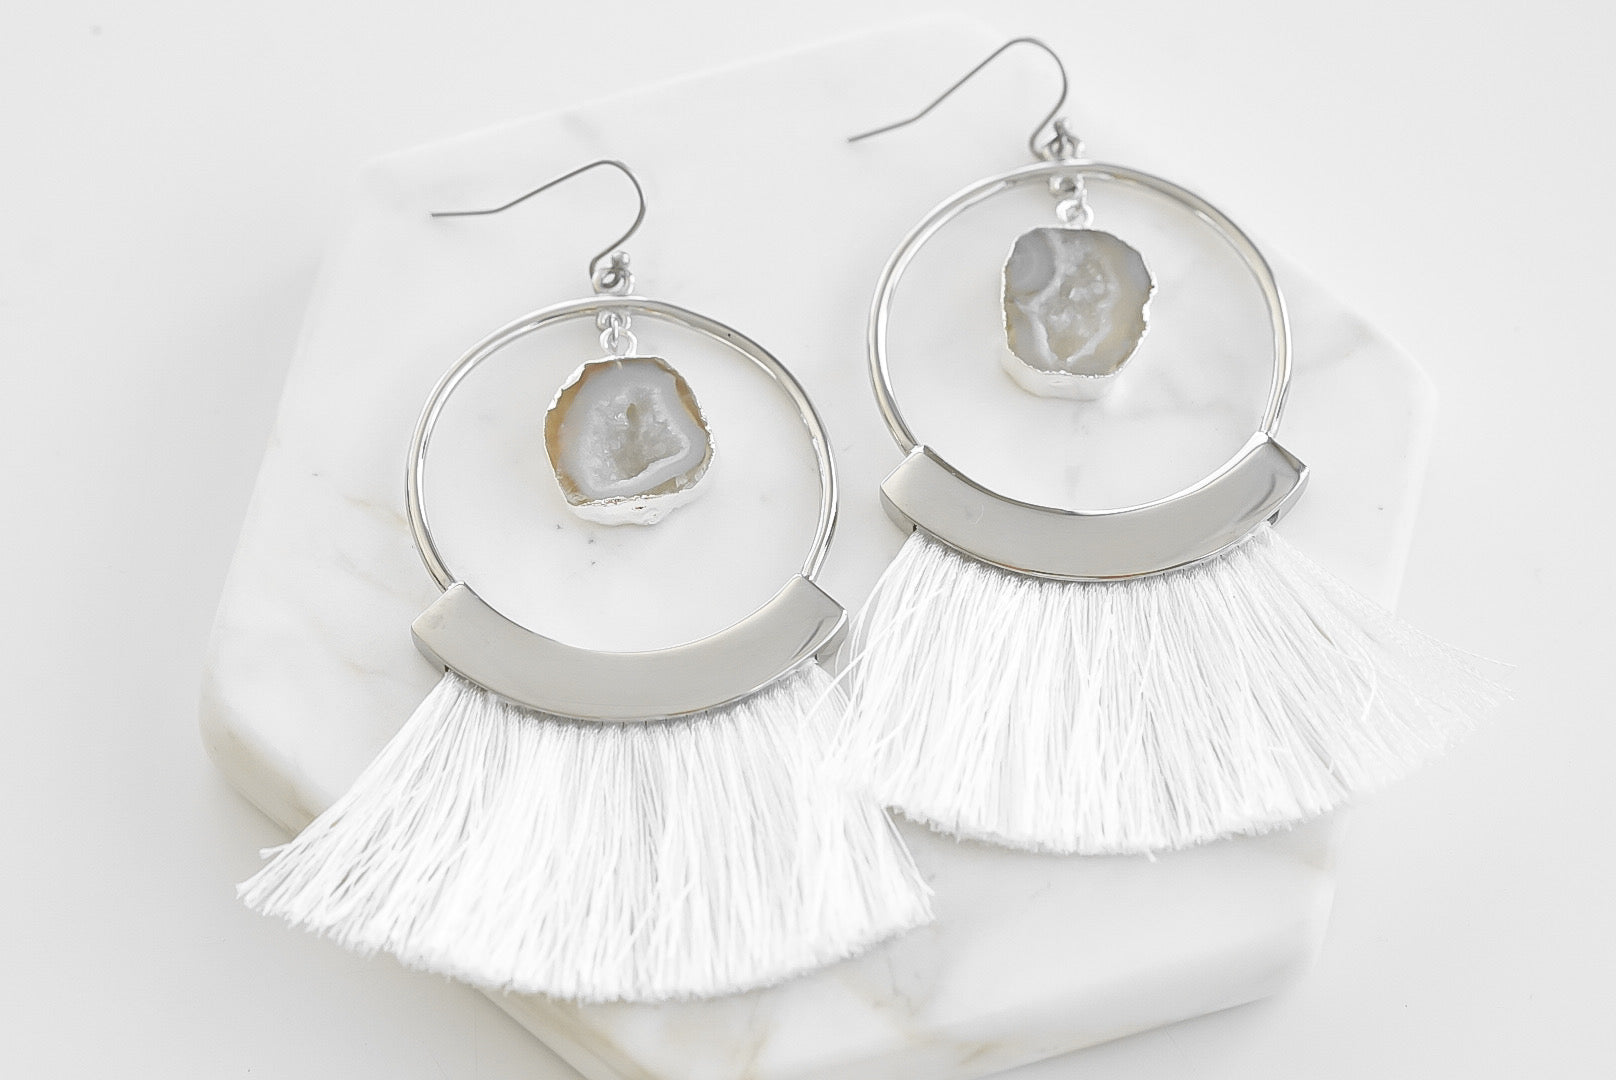 Colección Agate - Pendientes con flecos de plata cenizo joyería fina de diseño para hombres y mujeres